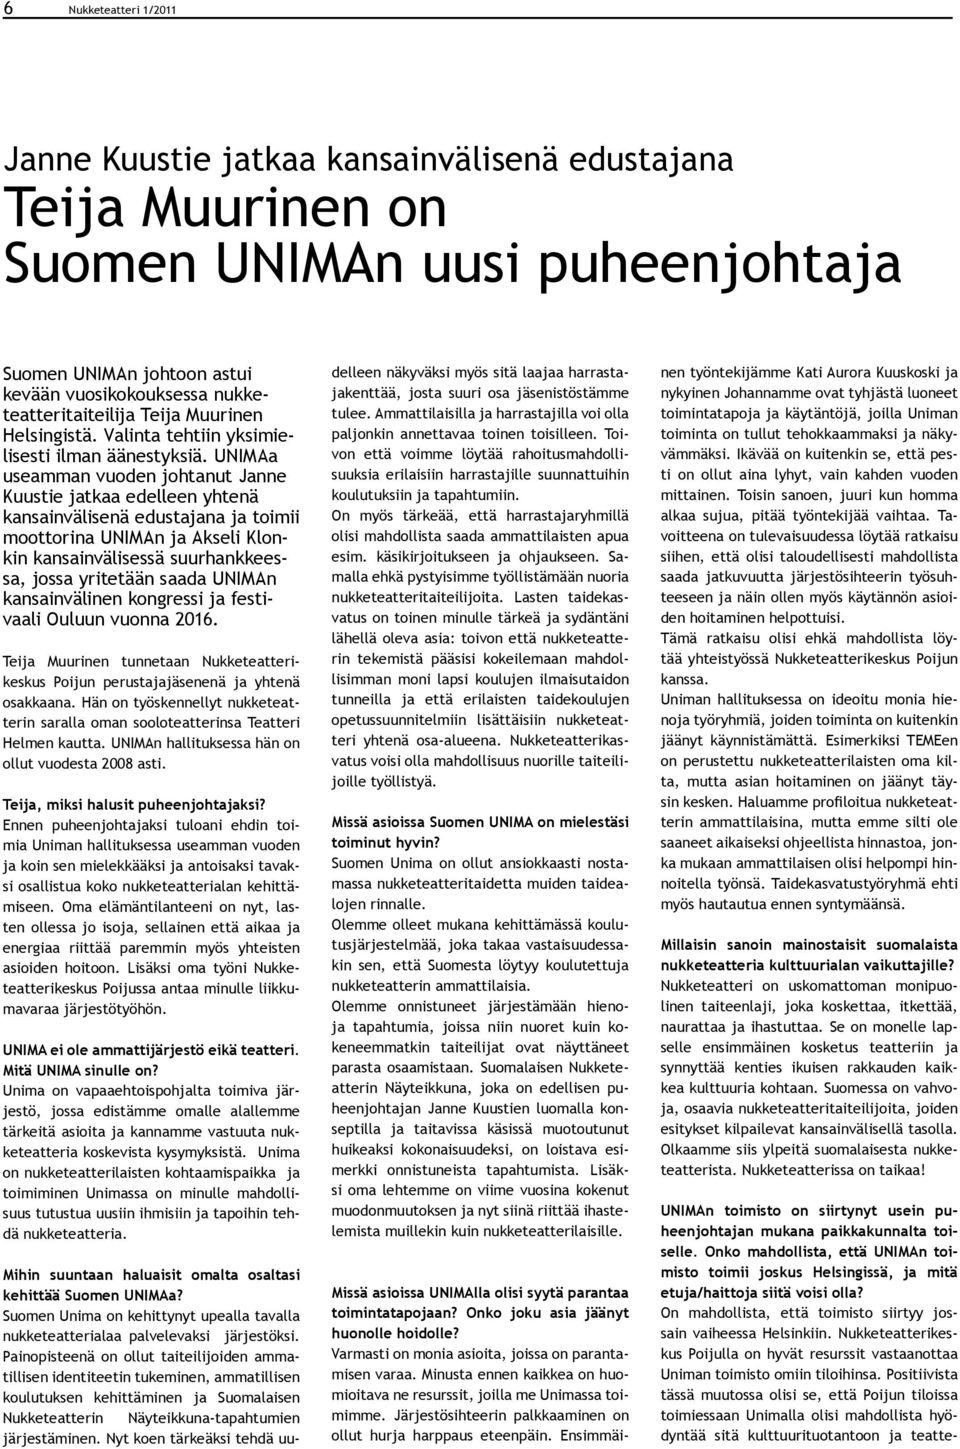 UNIMAa useamman vuoden johtanut Janne Kuustie jatkaa edelleen yhtenä kansainvälisenä edustajana ja toimii moottorina UNIMAn ja Akseli Klonkin kansainvälisessä suurhankkeessa, jossa yritetään saada